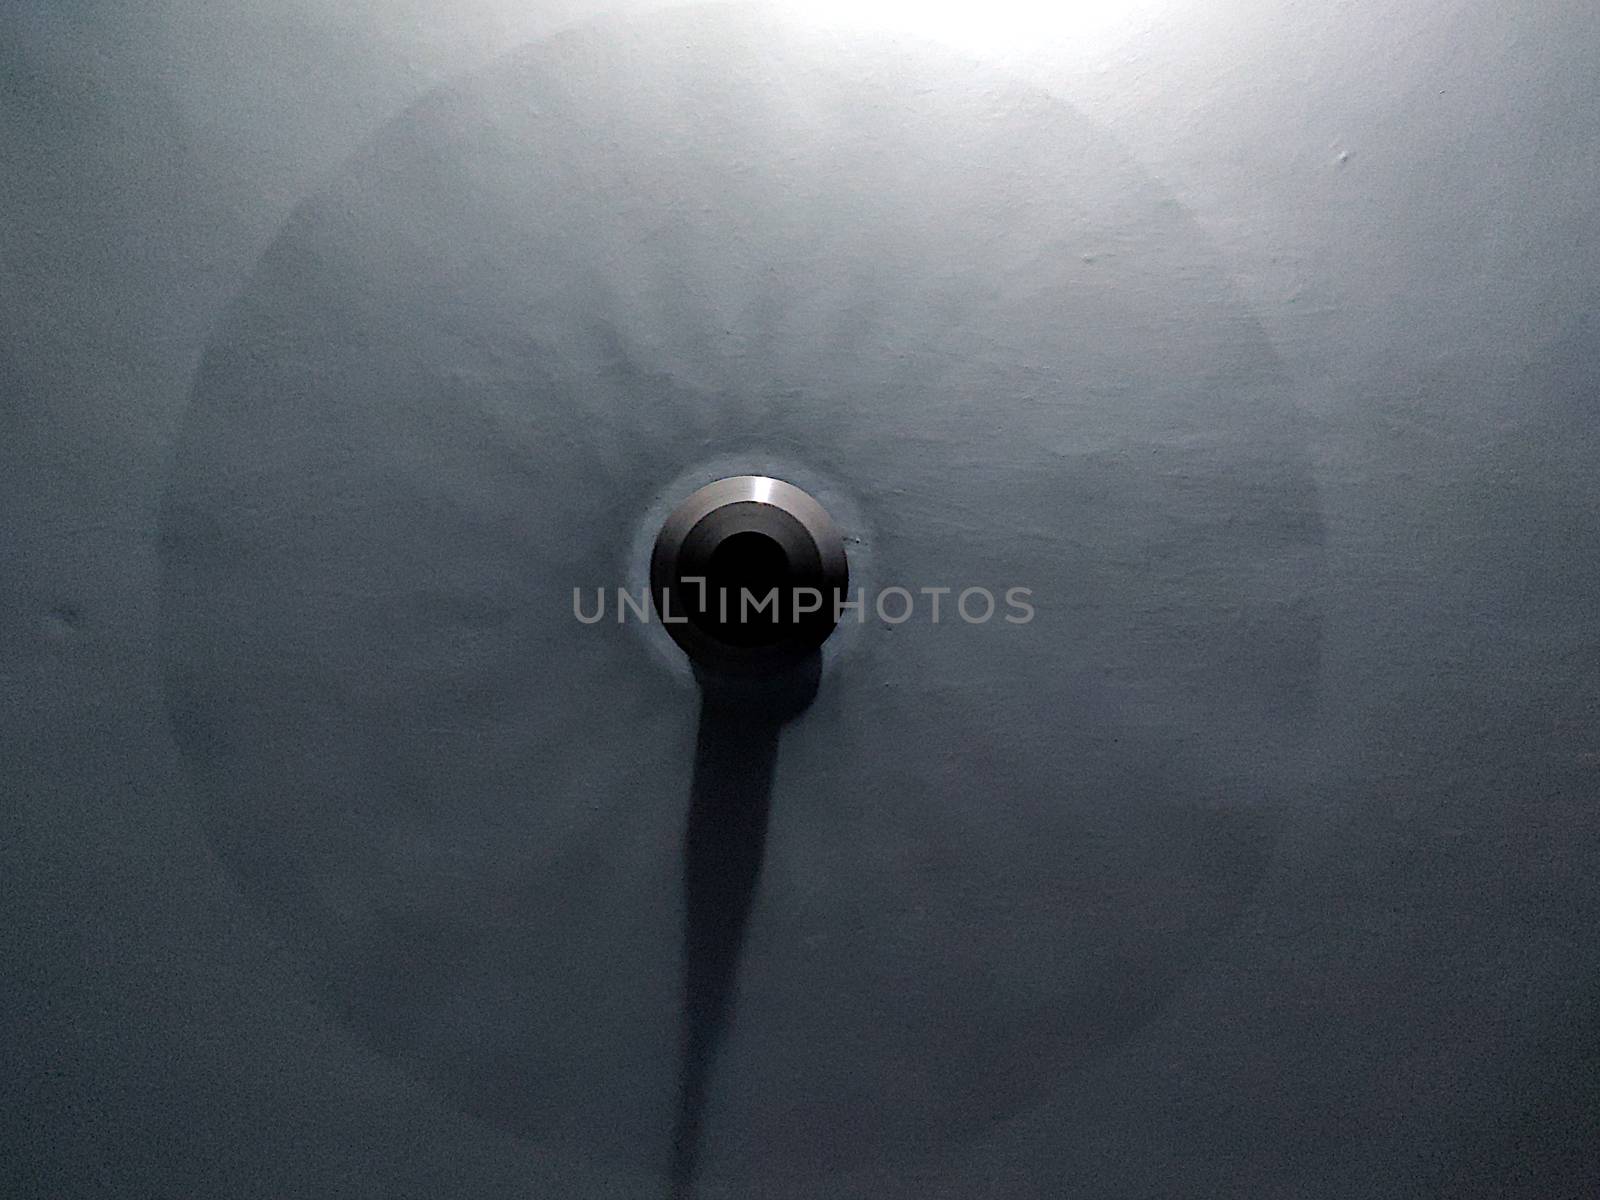 A ceiling fan in blue light by mshivangi92